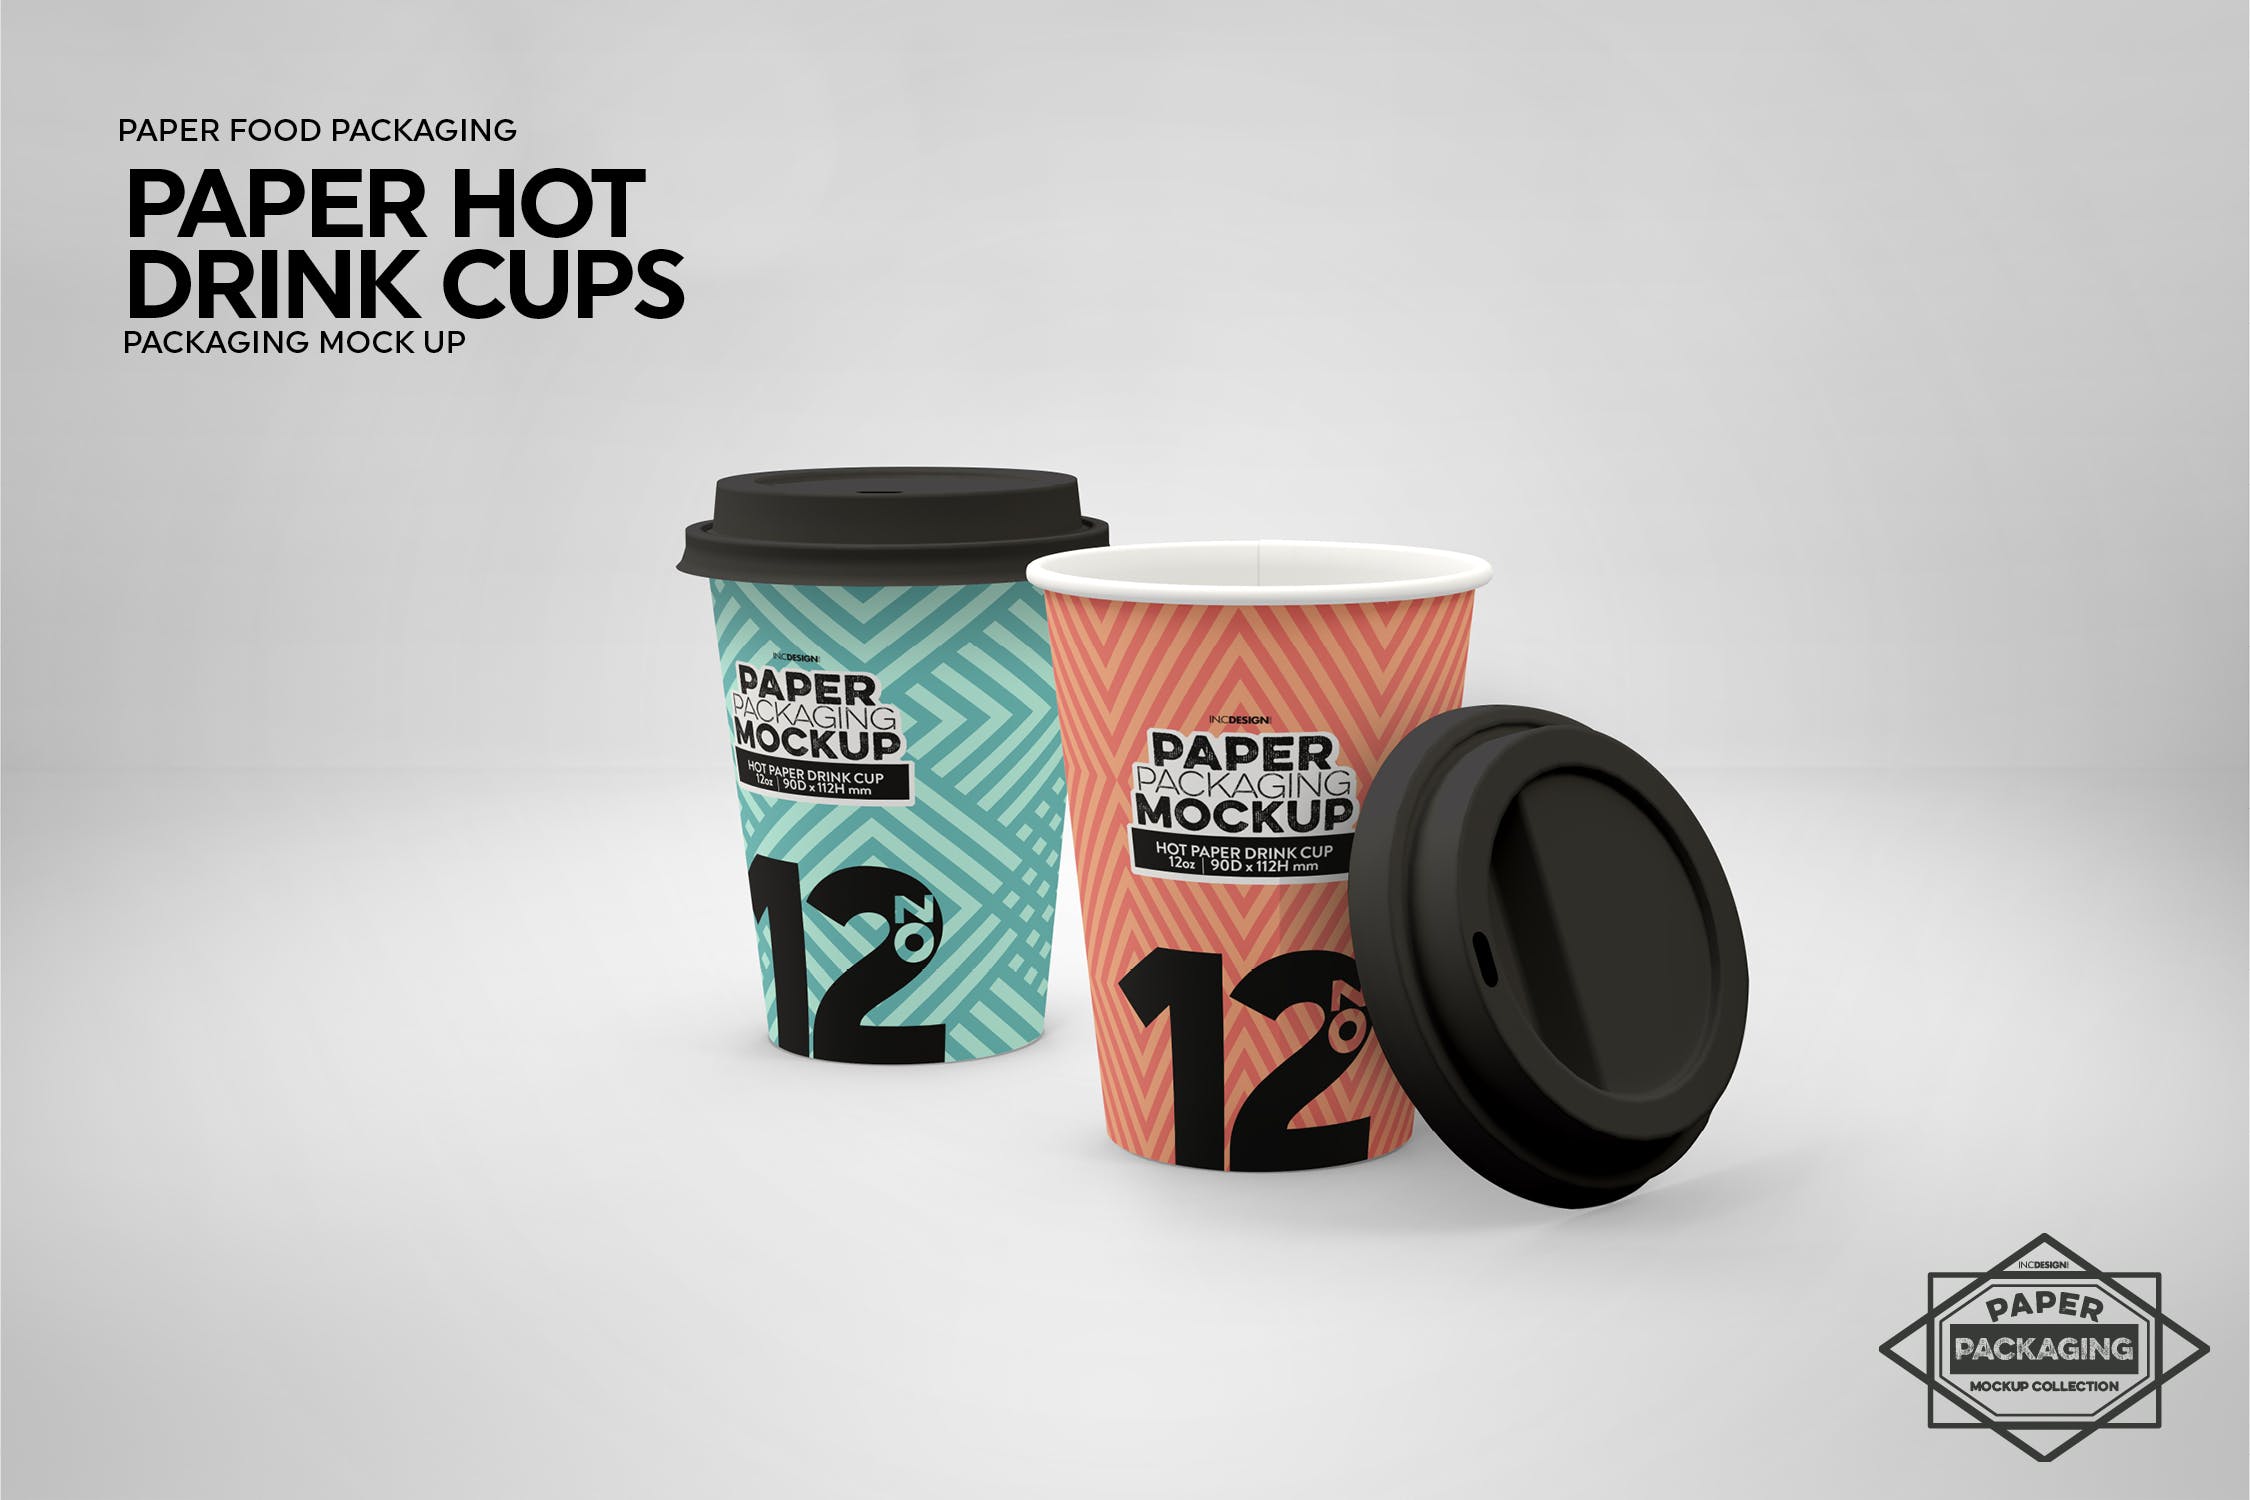 热饮一次性纸杯外观设计第一素材精选 Paper Hot Drink Cups Packaging Mockup插图(10)